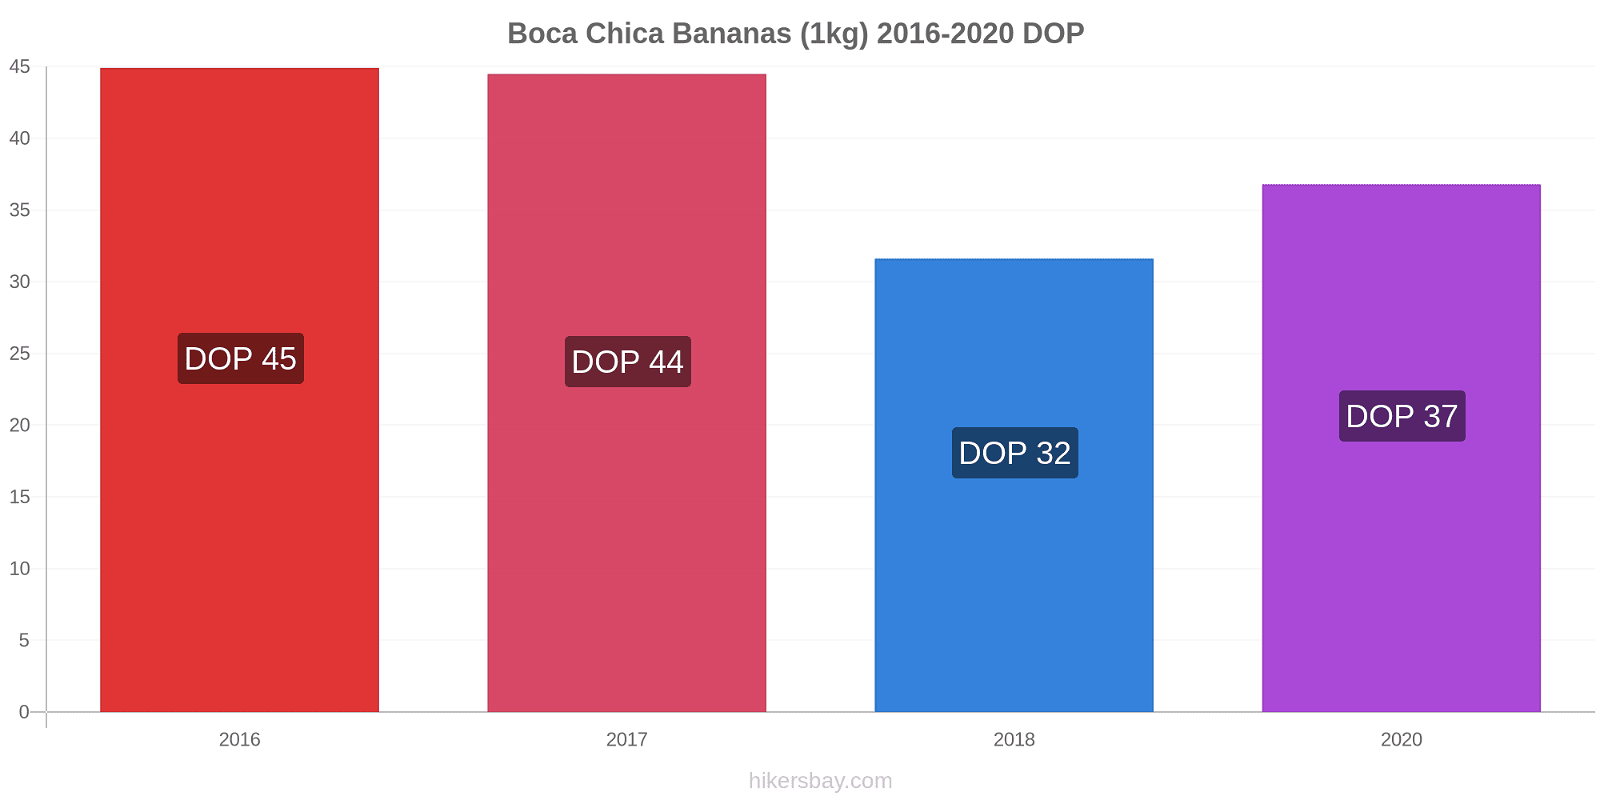 Boca Chica variação de preço Banana (1kg) hikersbay.com